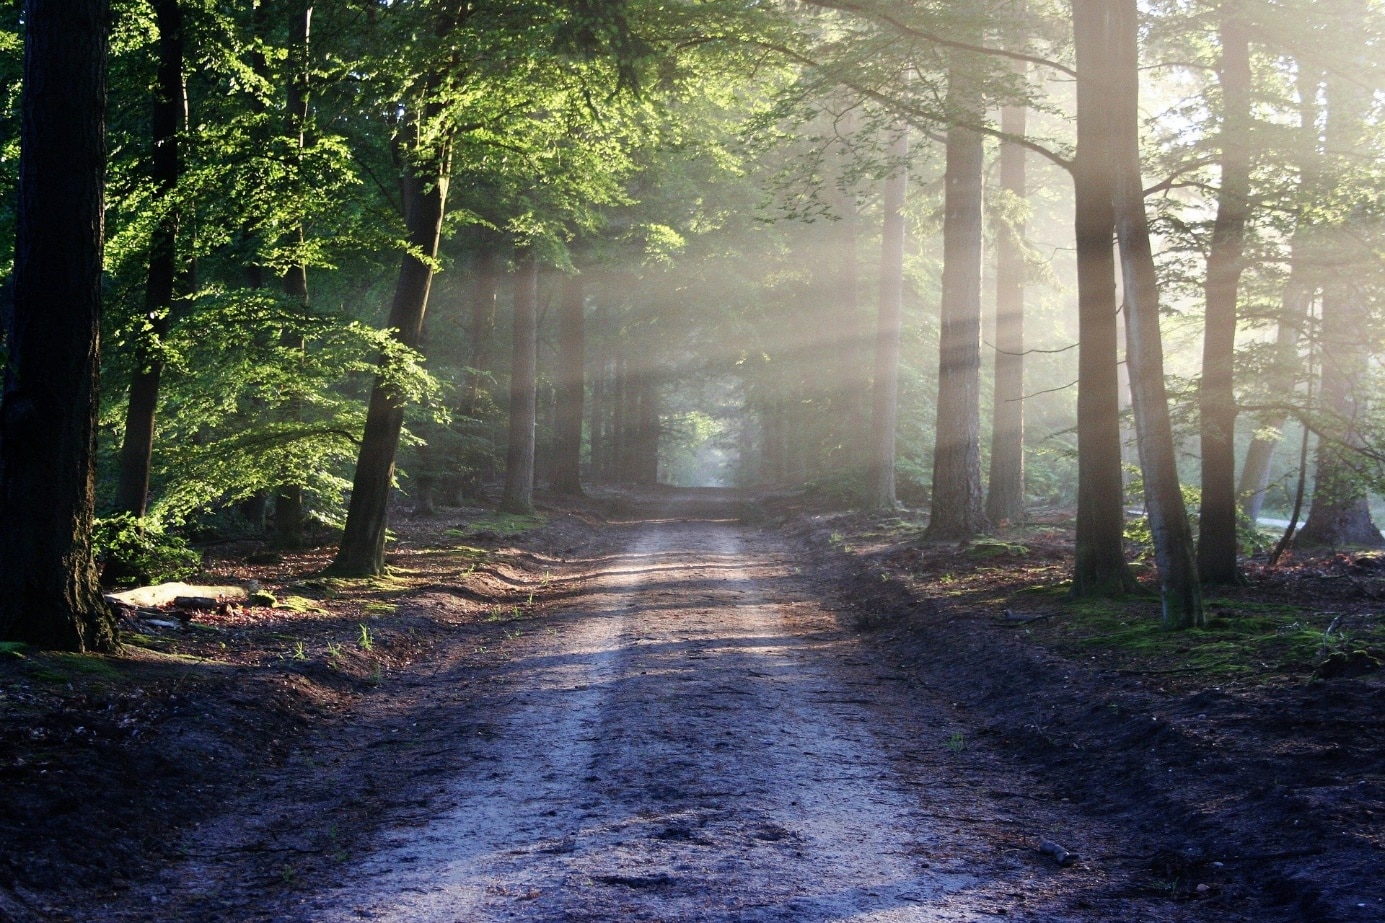 Ein Spaziergang im Wald ist zu jeder Tageszeit besonders erholsam. Foto: bertvhul CCO Public Domain via pixabay